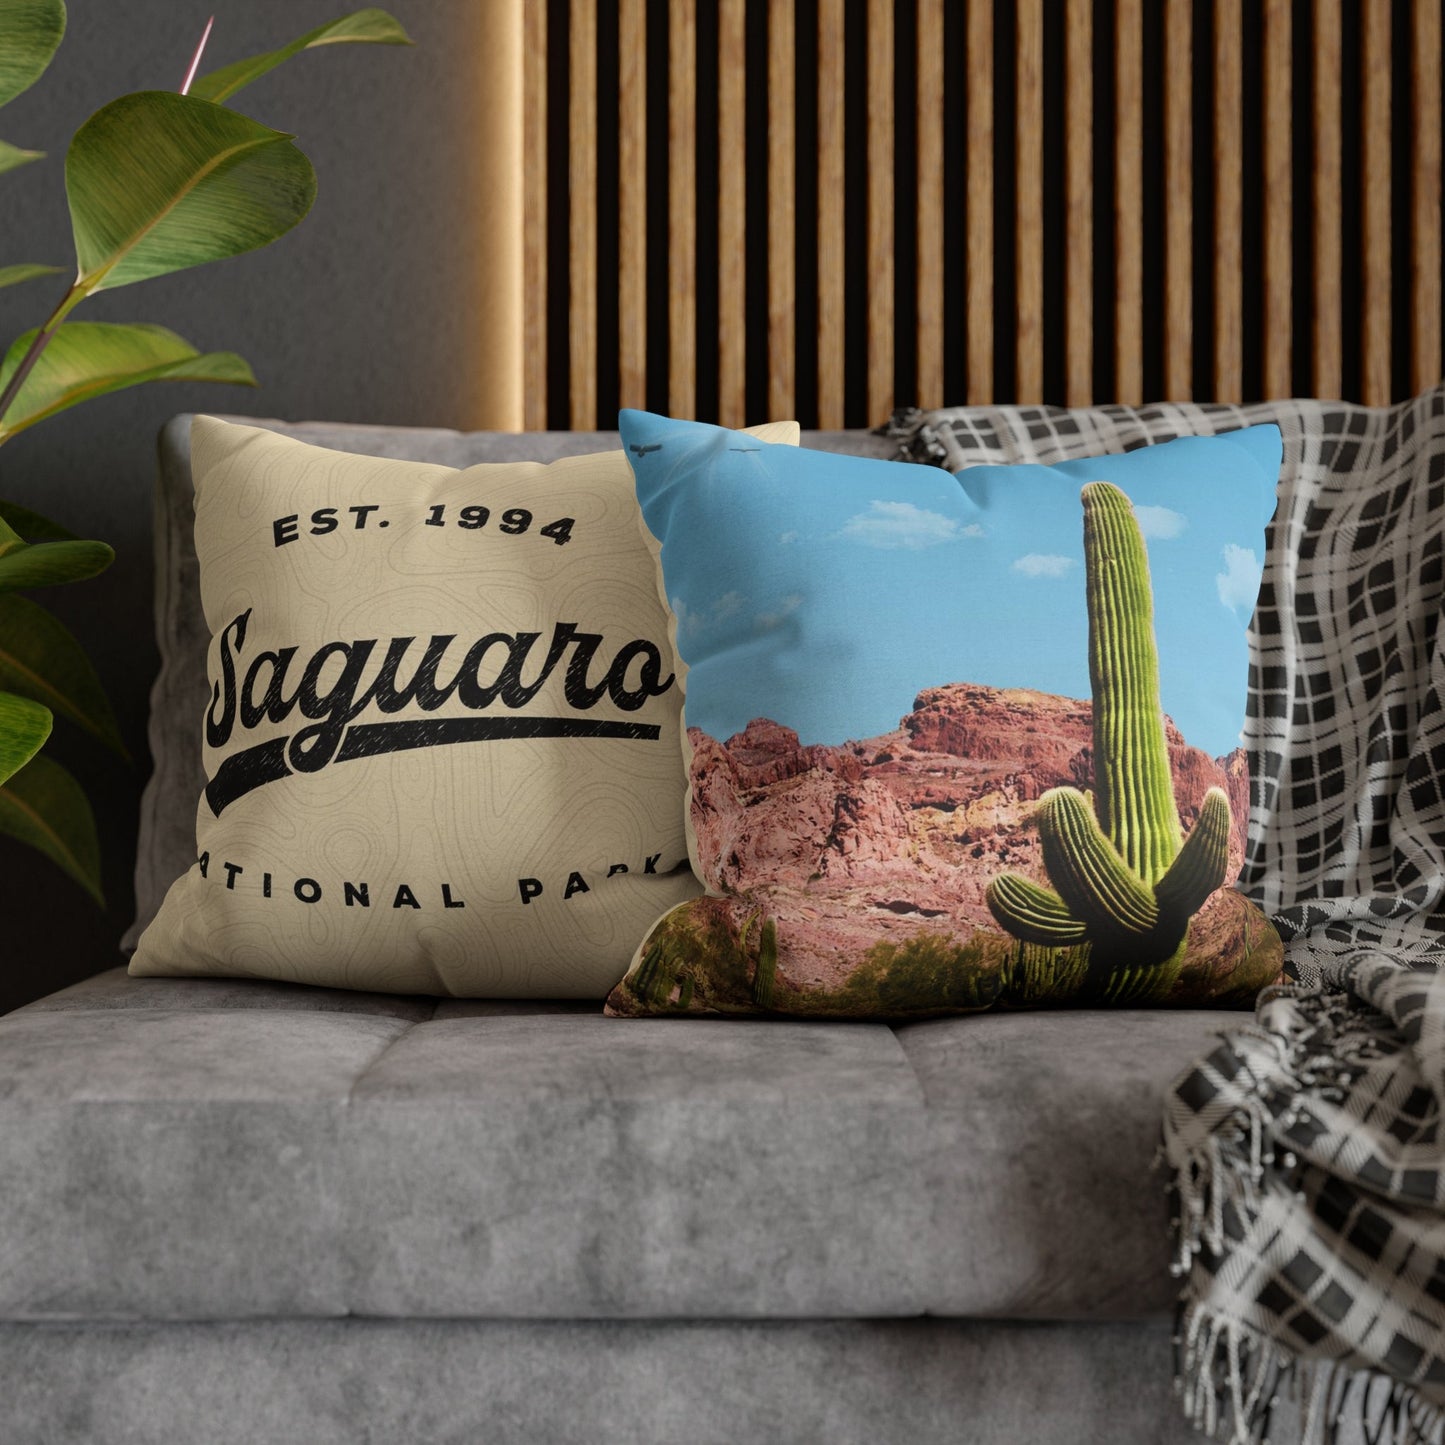 Saguaro National Park Throw Pillow